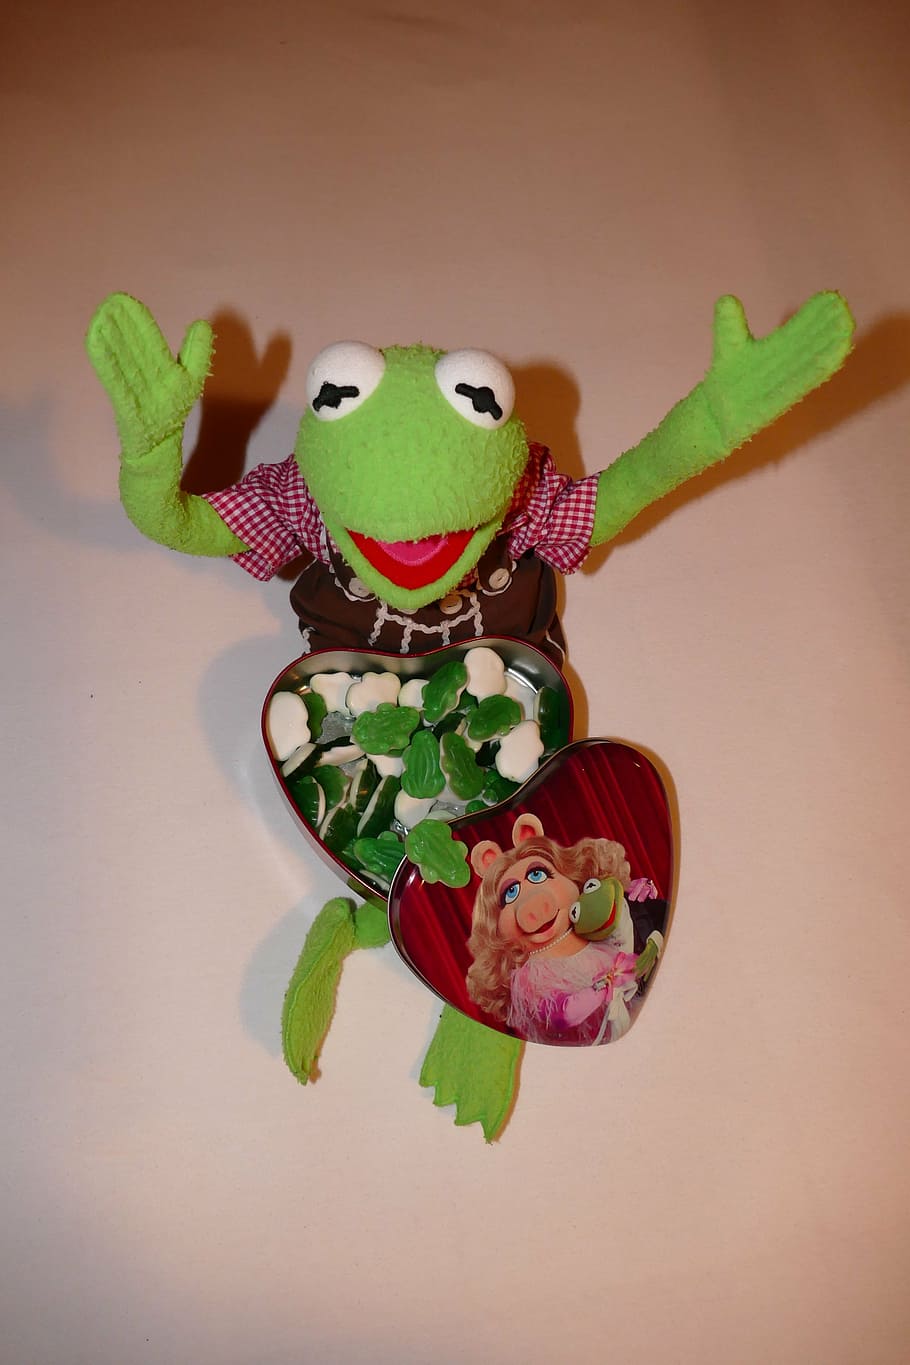 kermit, frog, look forward, gummibärchen, rubber frogs, box, heart, heart shaped, miss piggy, friends